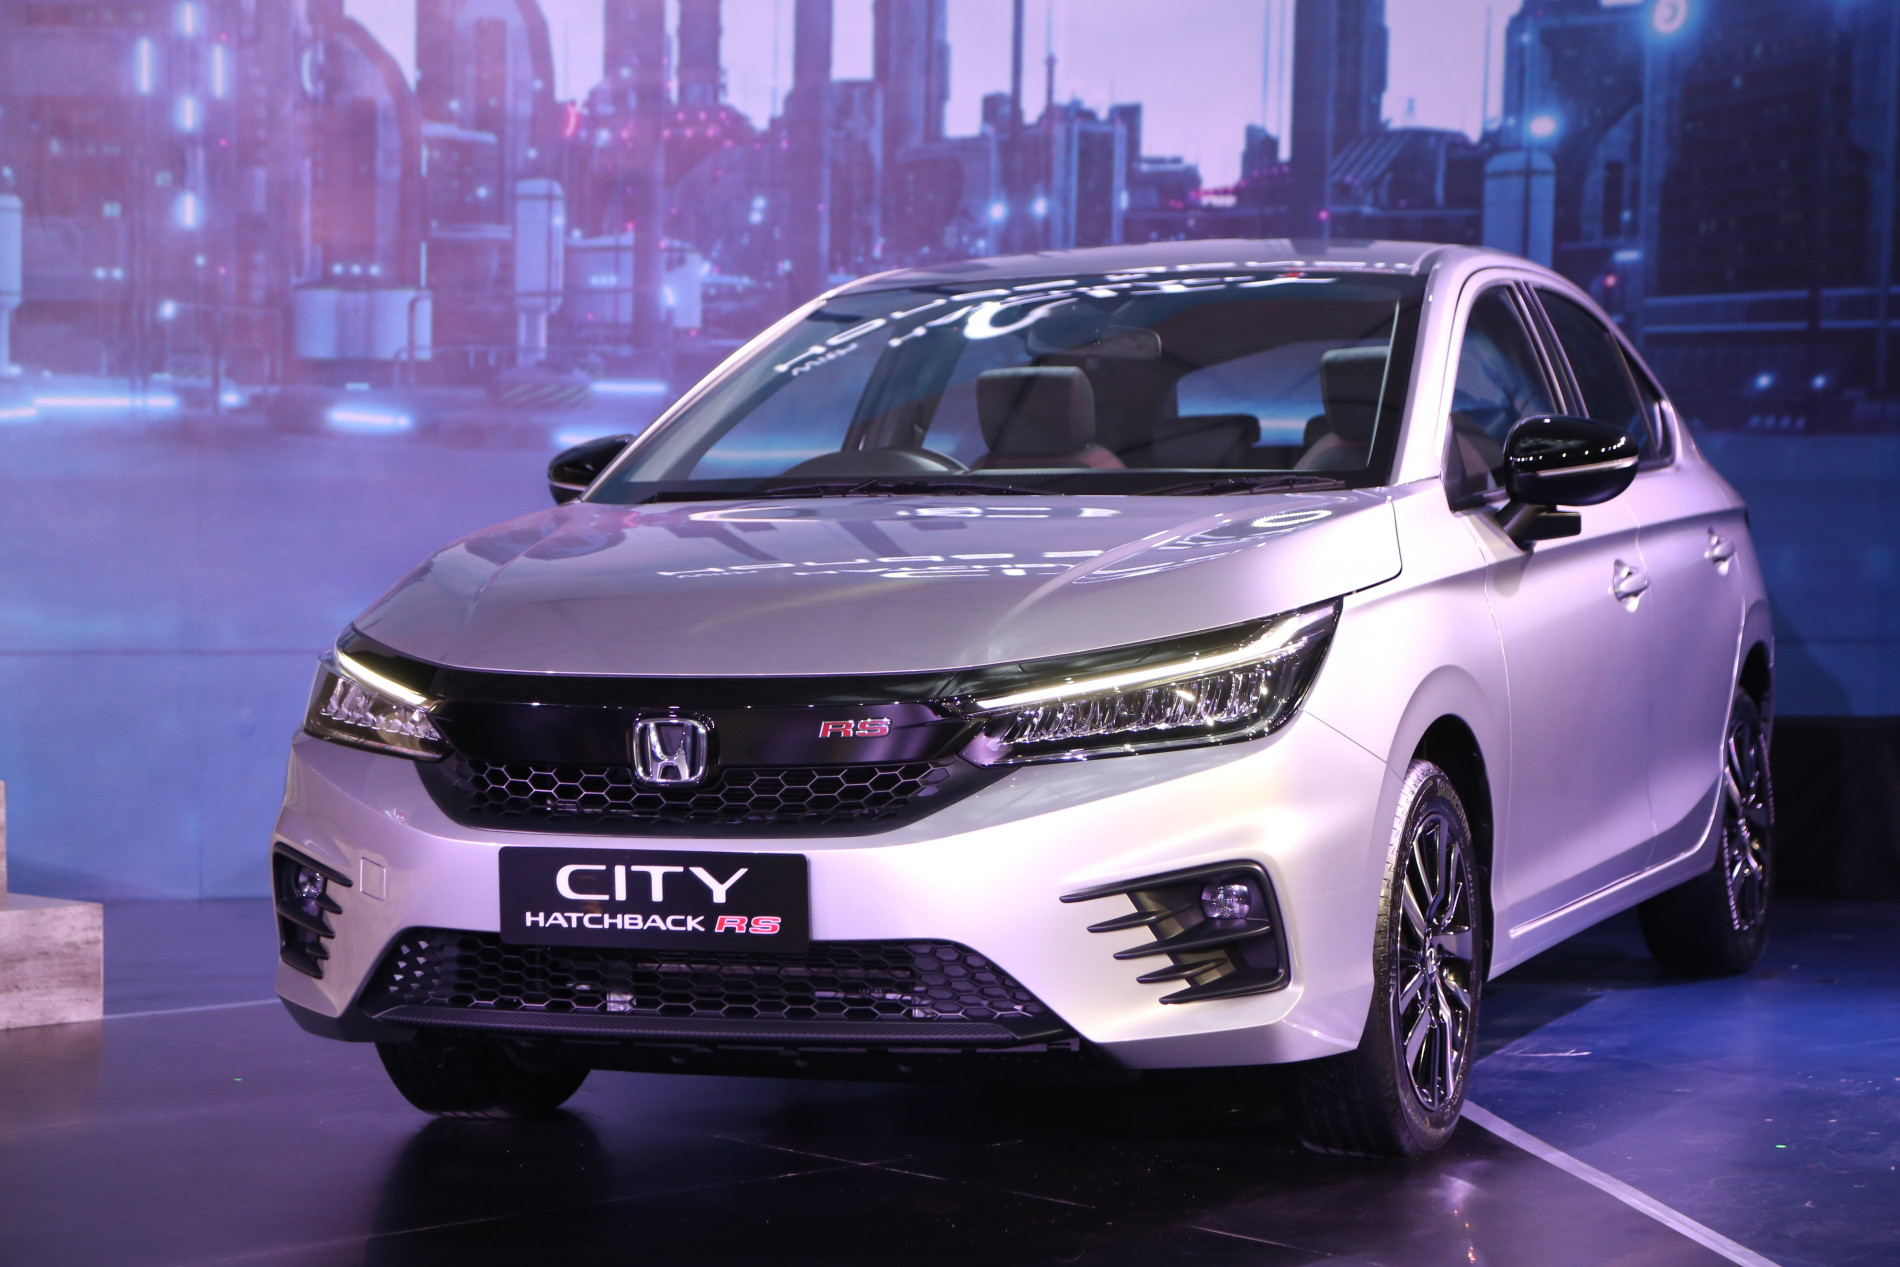 Honda Luncurkan Varian Terbaru Honda City Hatchback RS yang Dilengkapi Teknologi Honda Sensing